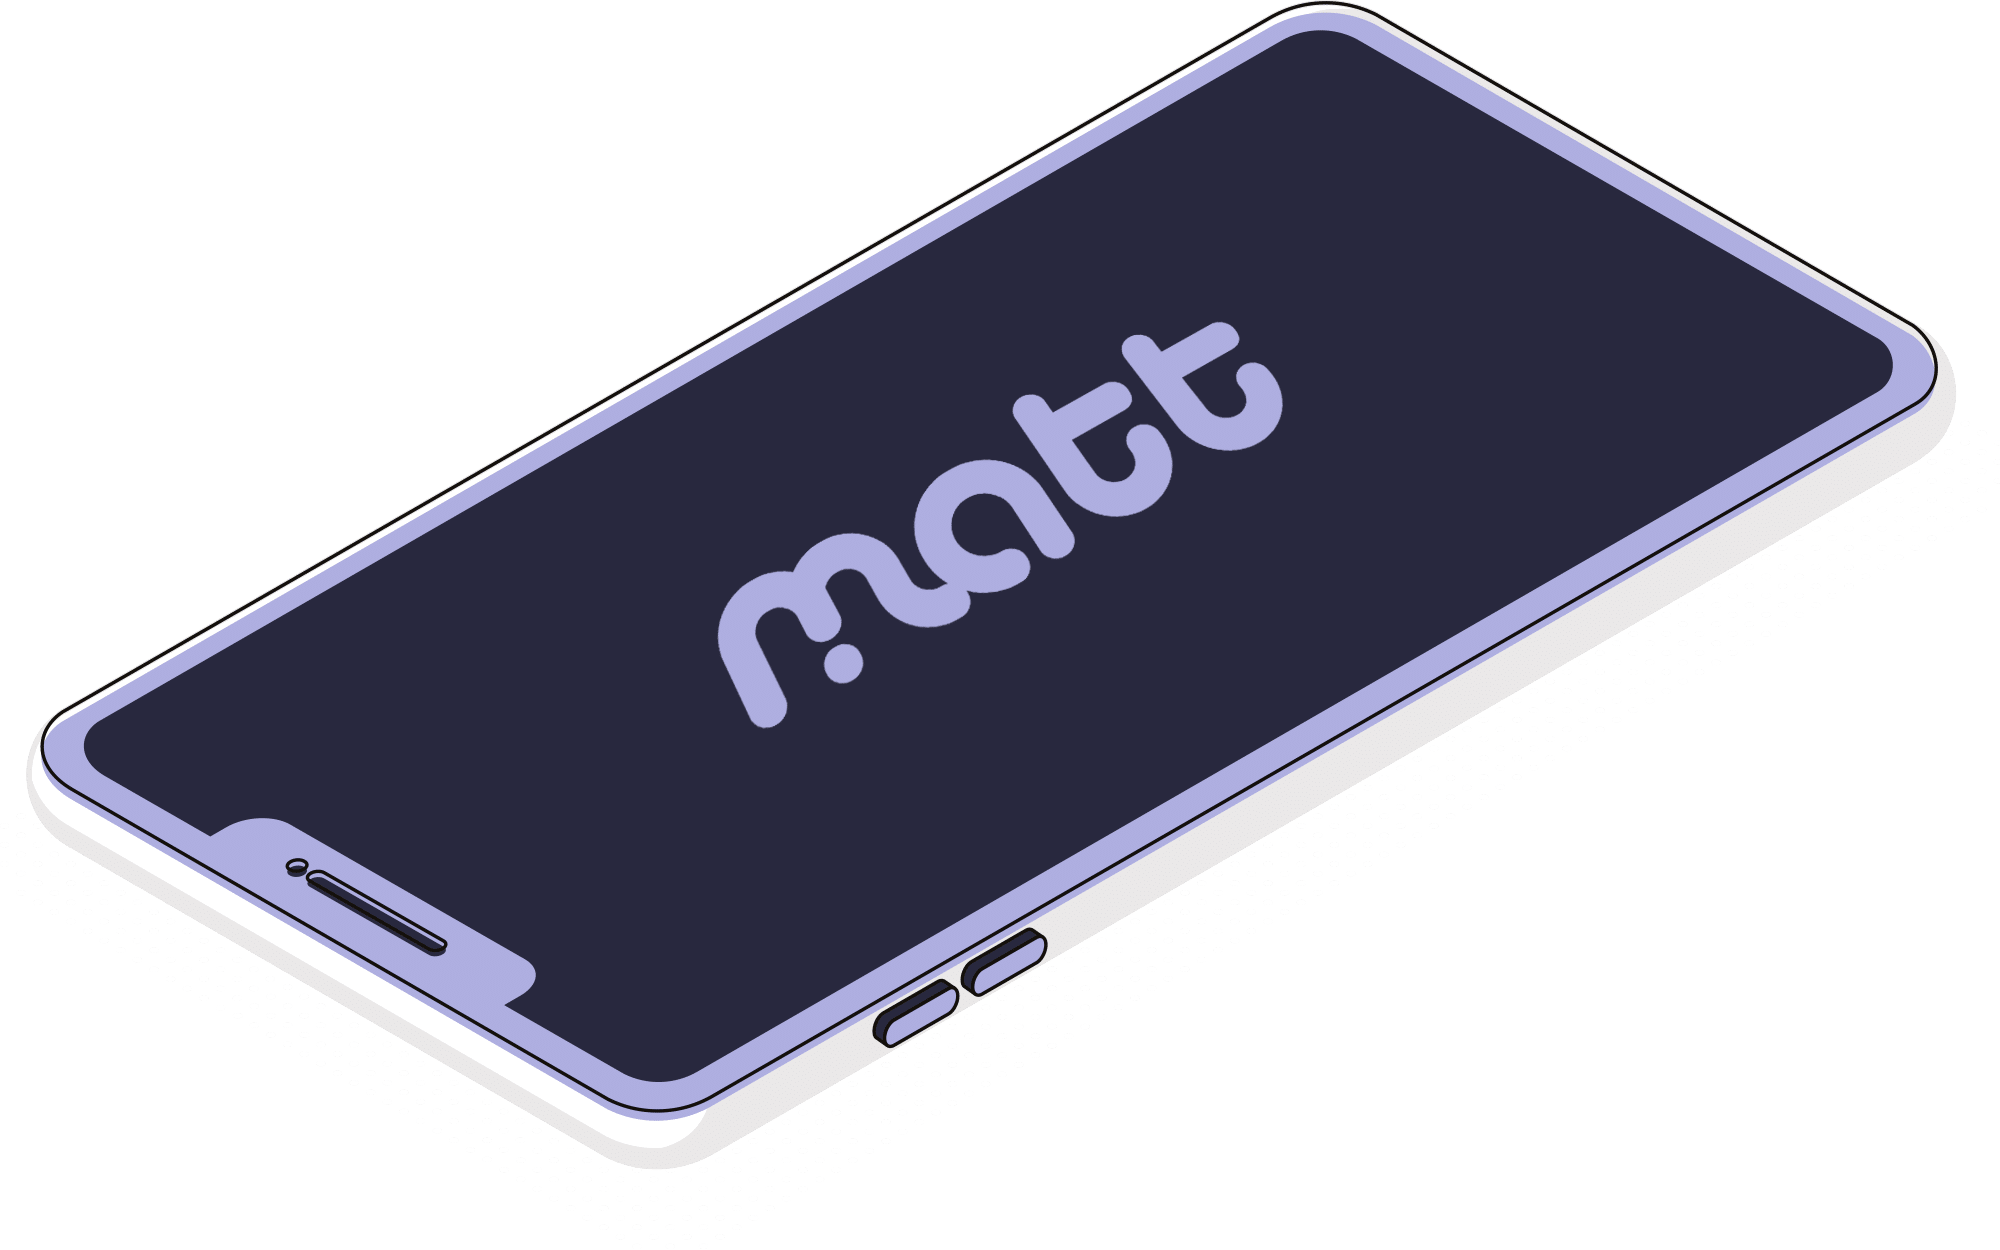 MATT OS independent devices